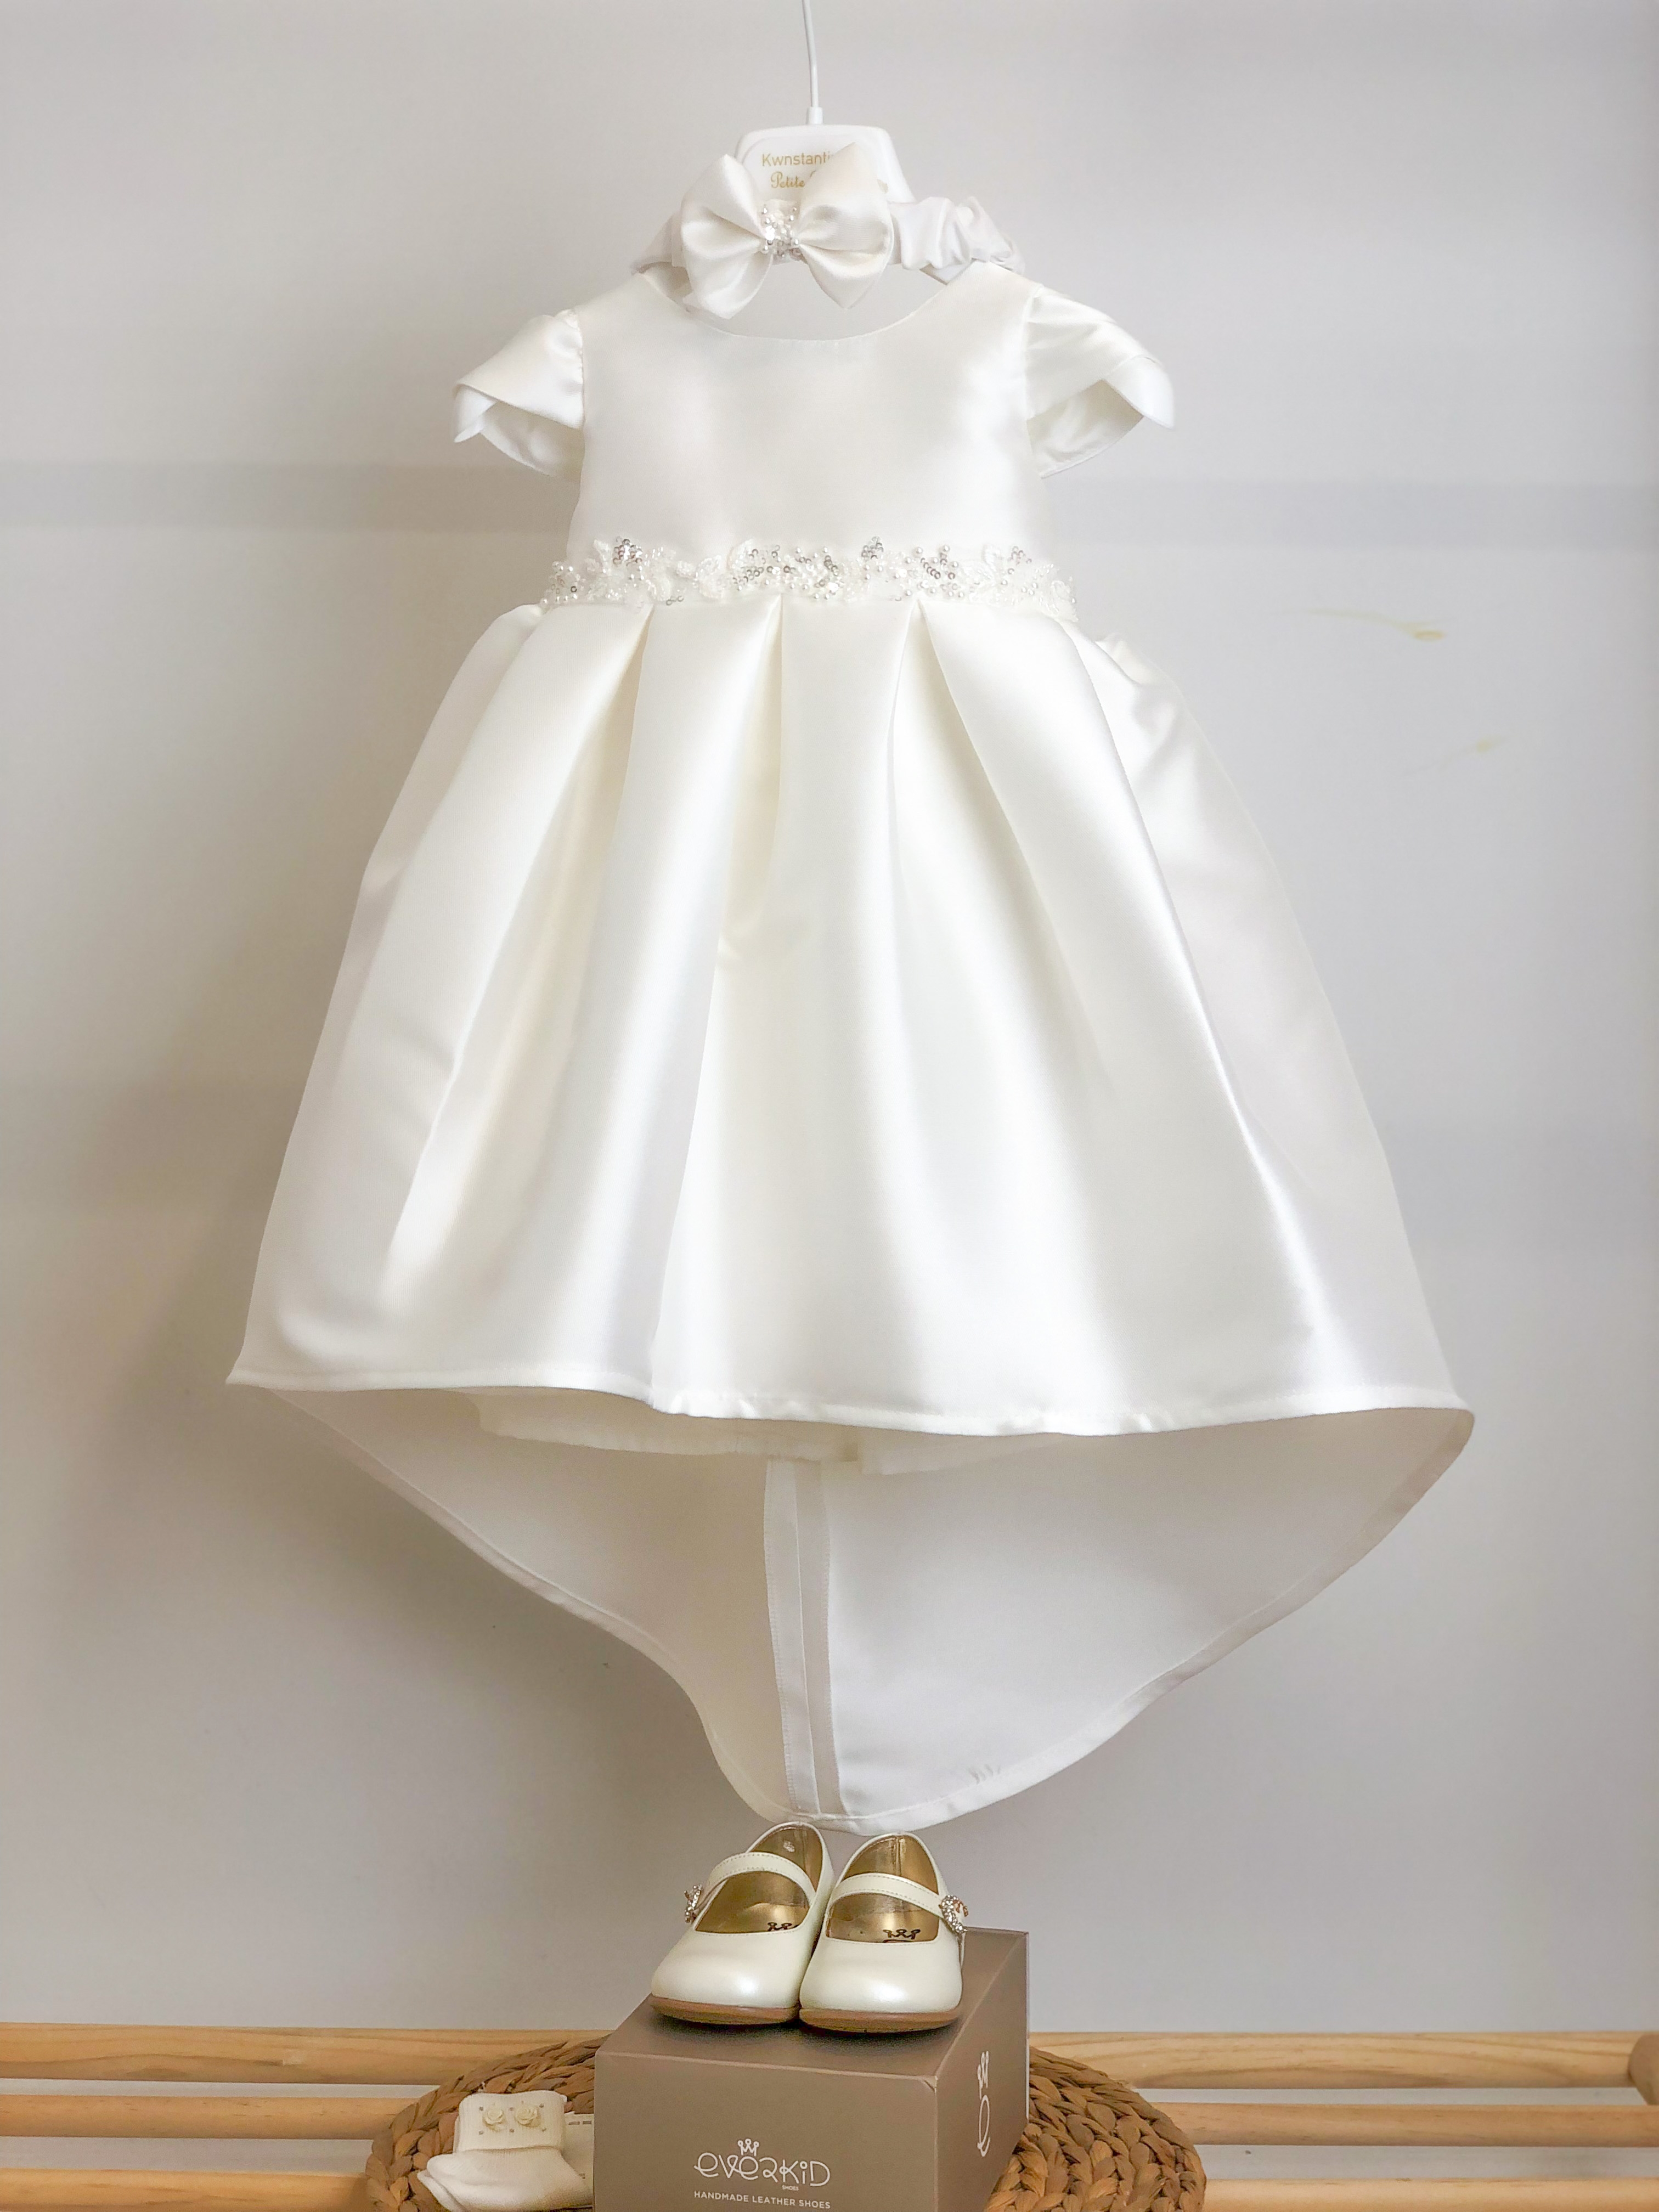 βαπτιστικό φόρεμα για κορίτσι ύφασμα σατεν ταυτας μικάντο καλό φούστα με ουρά μανίκι ύφασμα με τρέσα πέρλες και στρας στην μέση παπούτσια � : 1